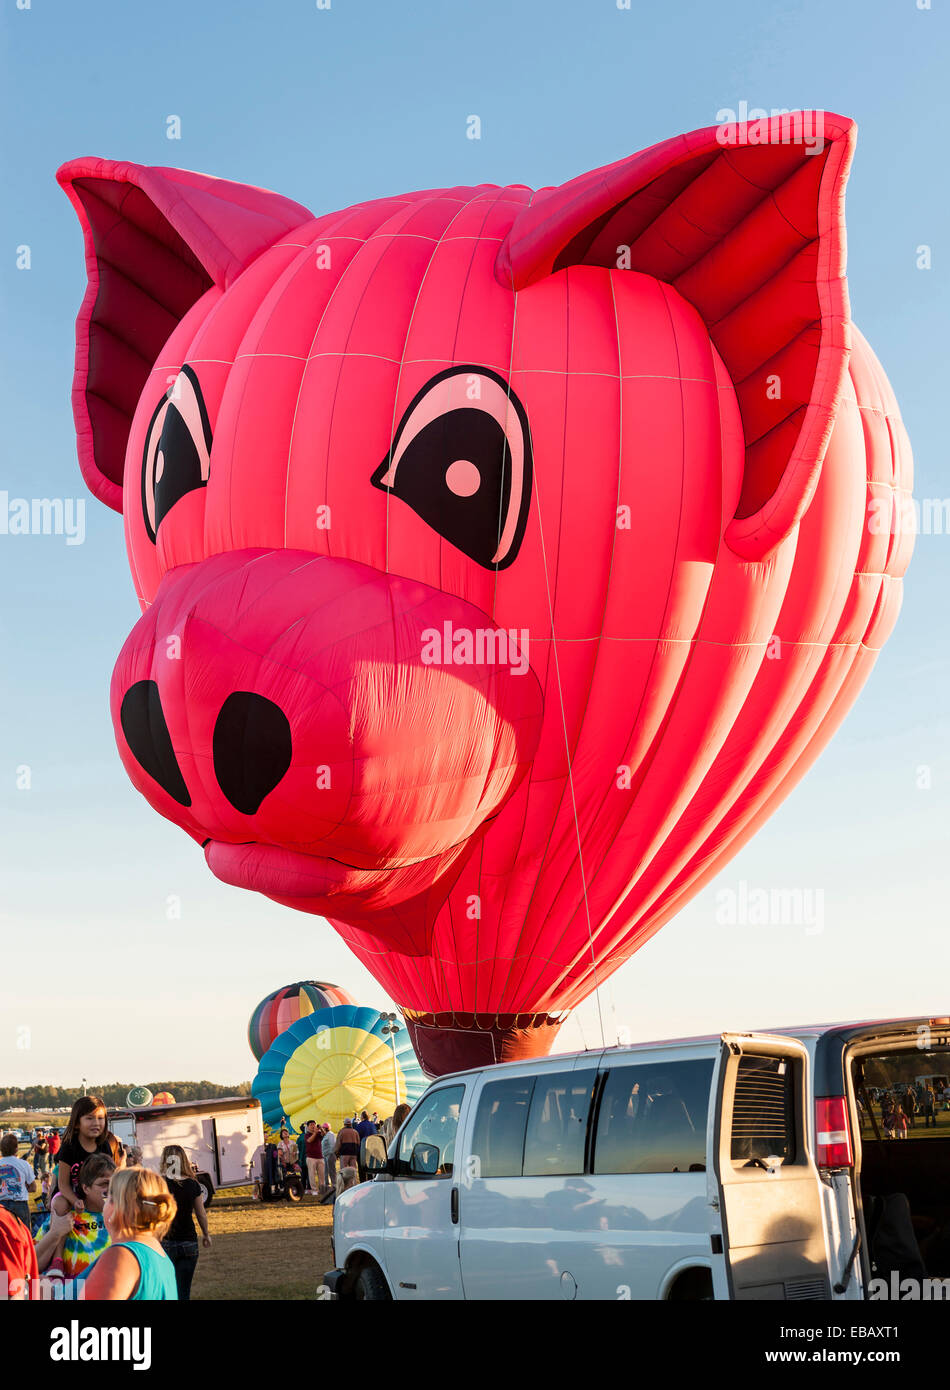 Queesbury, New York, USA - 20 septembre 2013 : La foule regarder comment une forme spéciale hot air ballon est gonflé avant le vol. Banque D'Images